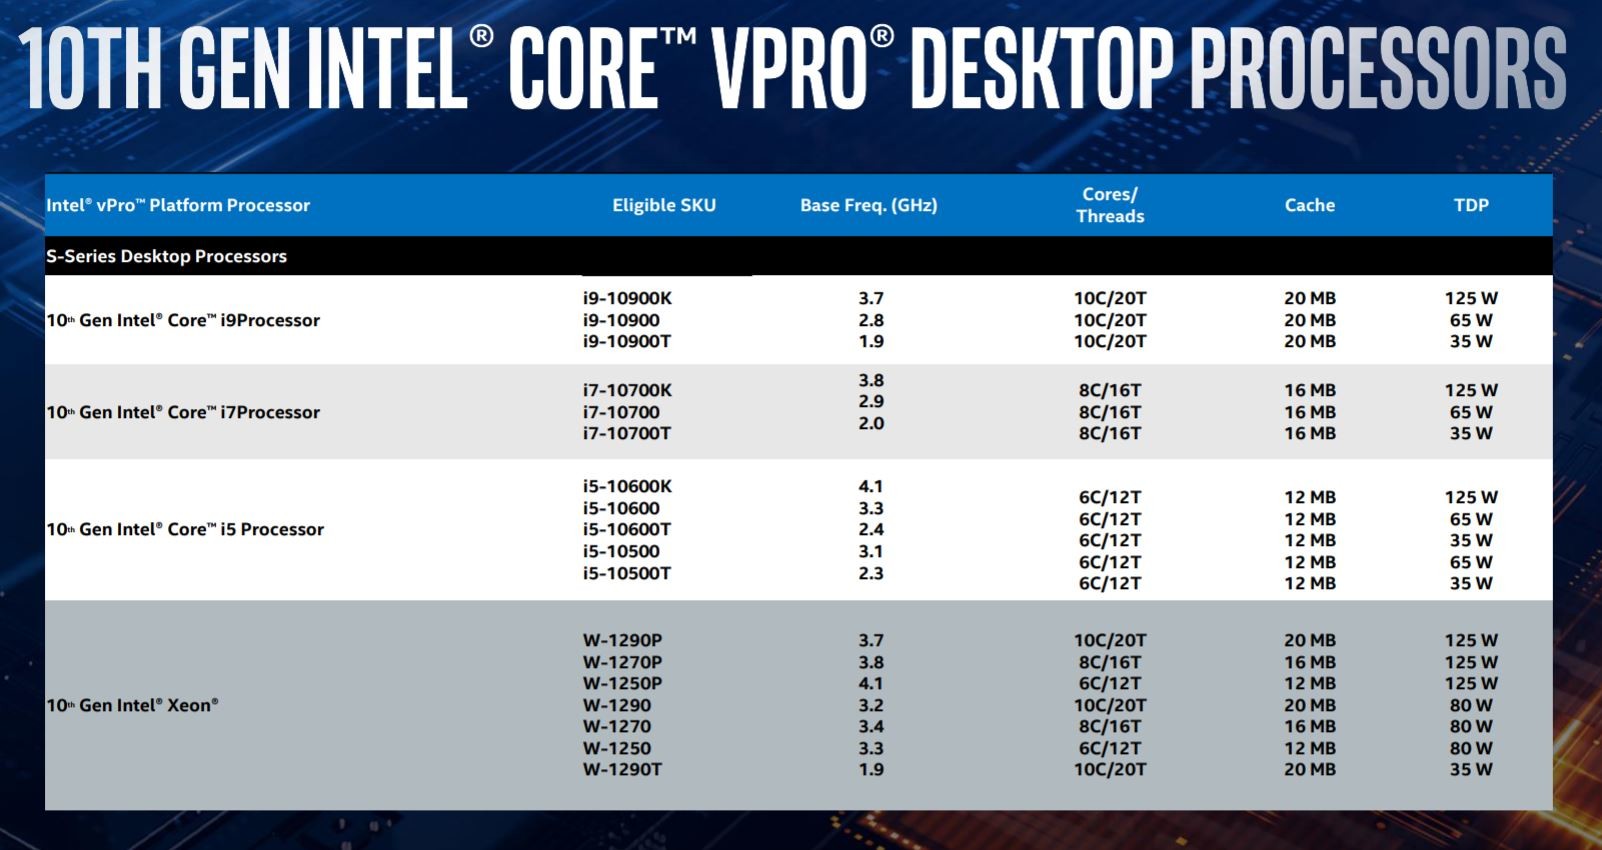 英特尔宣布推出适用于移动和台式机的Comet Lake vPro处理器